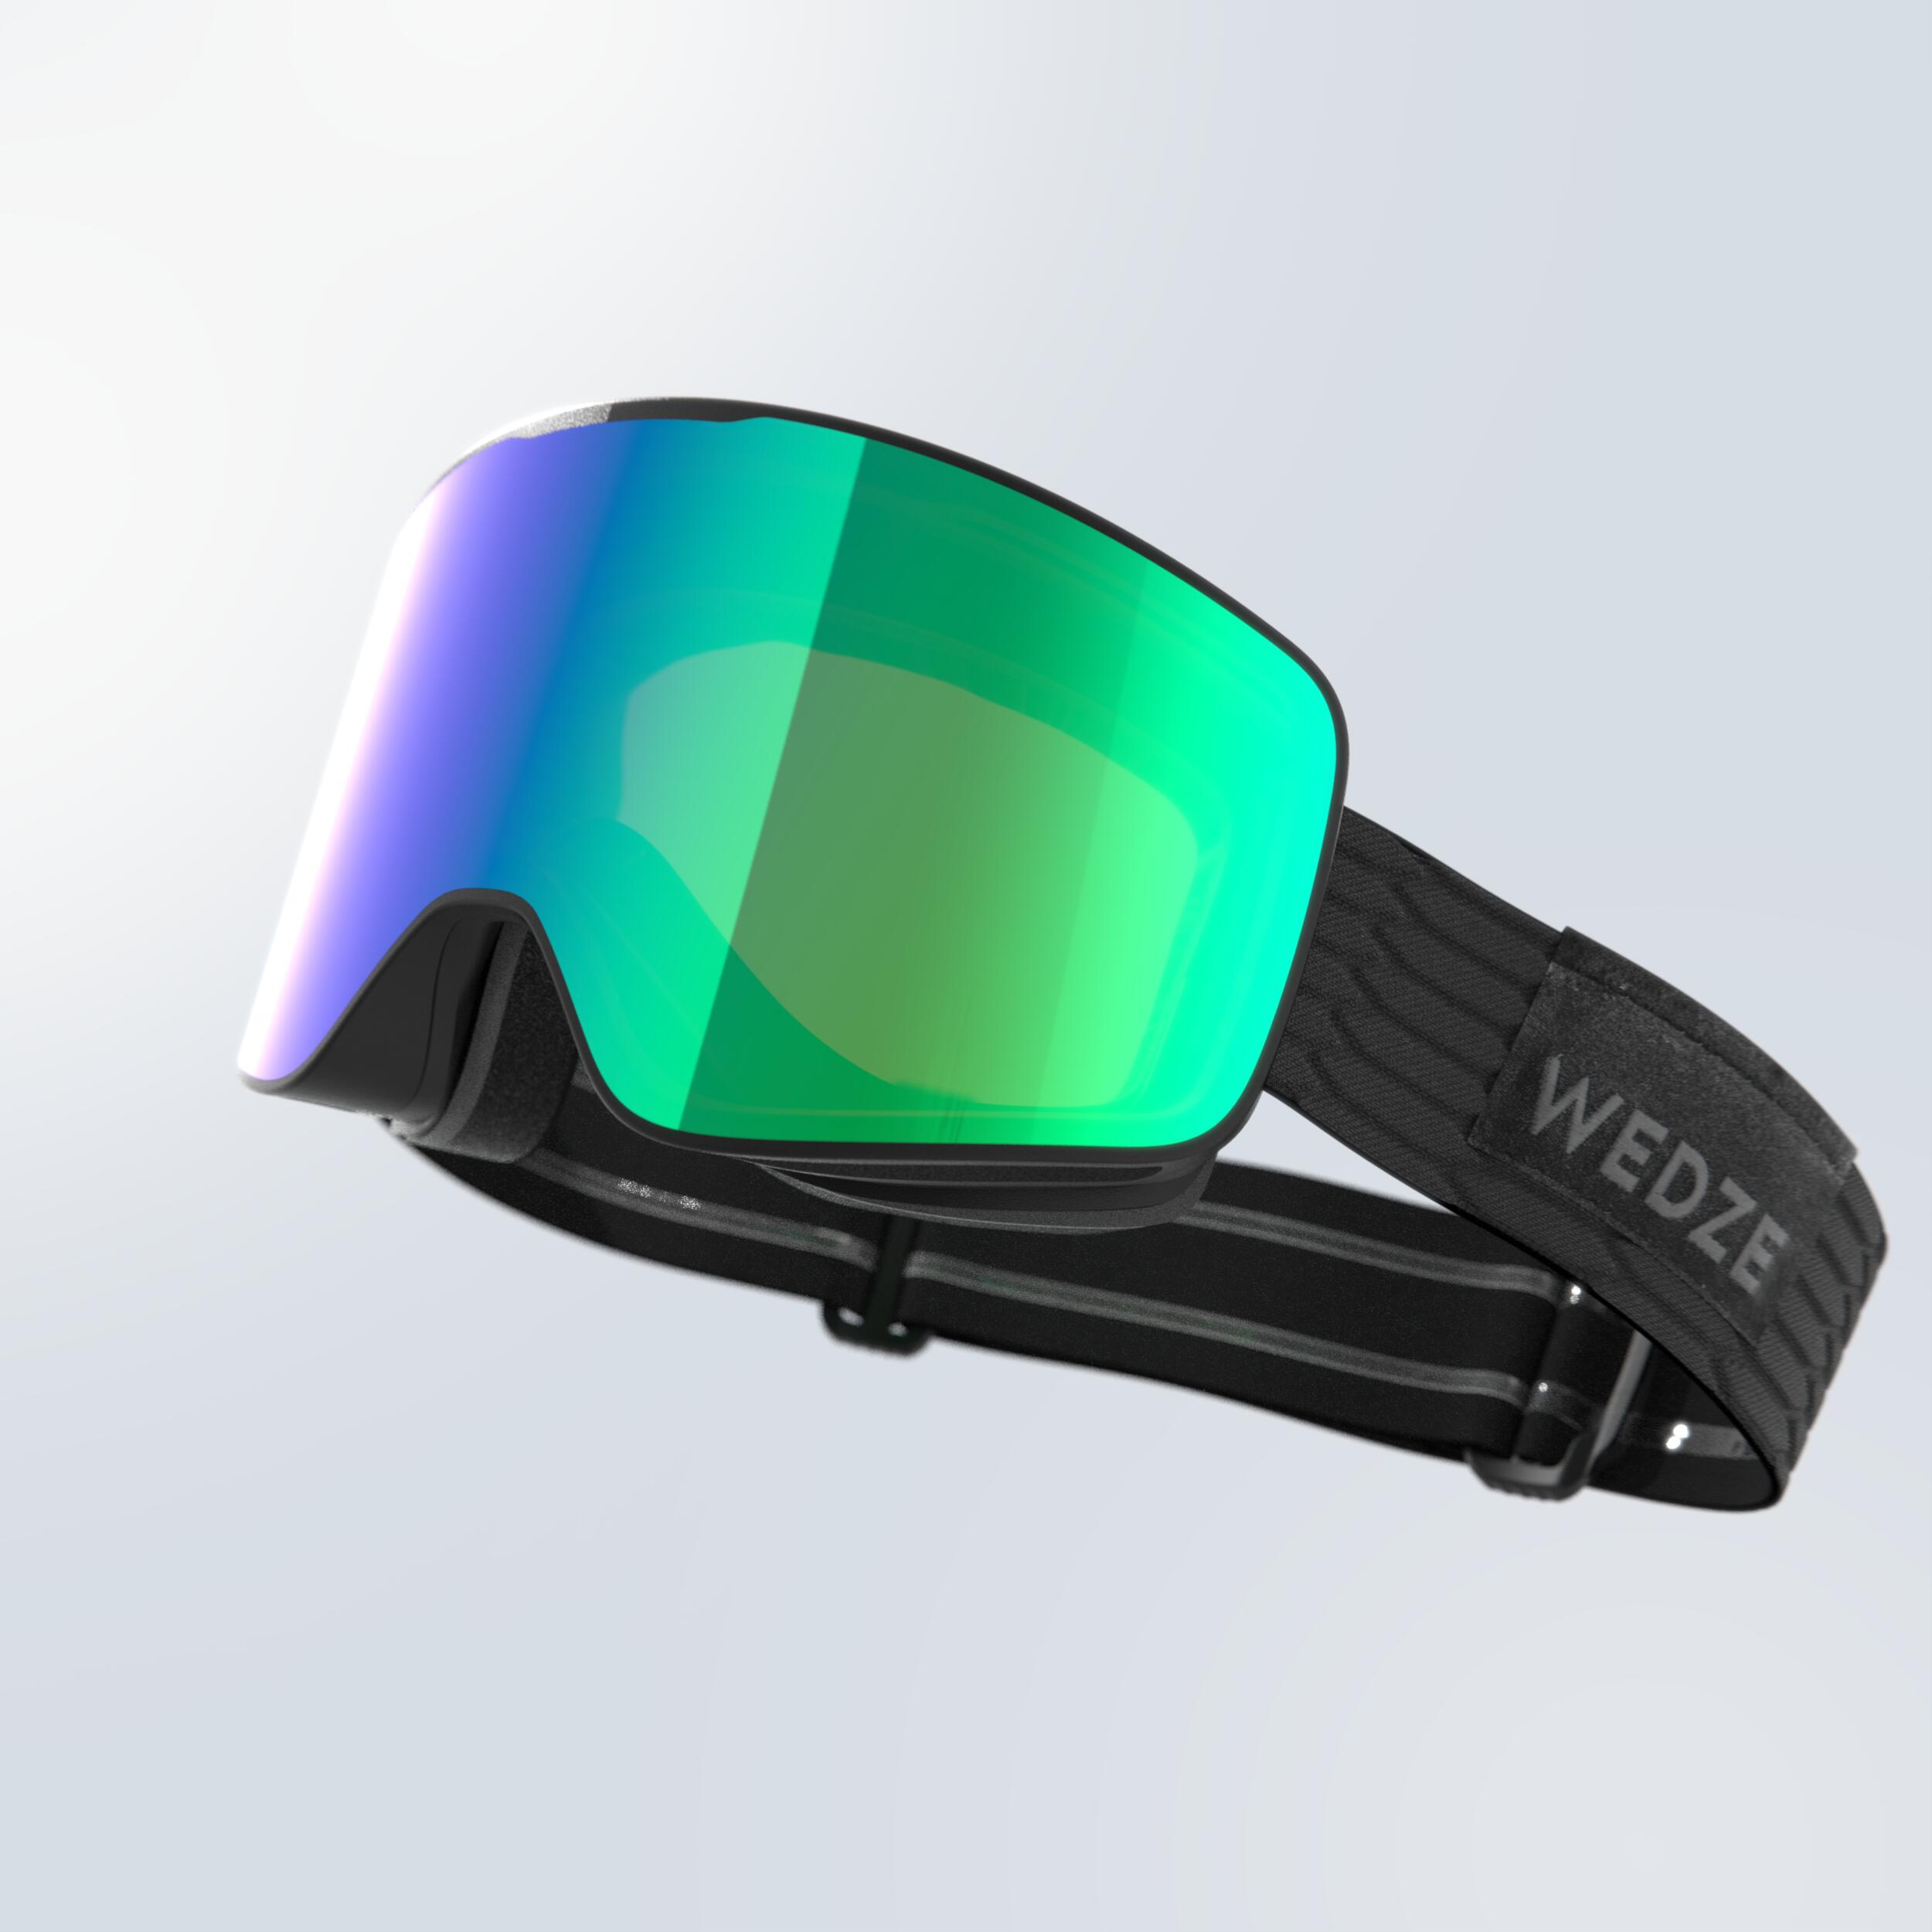 Skidglasögon - G 500 C Hd - Fint Väder Junior/vuxen